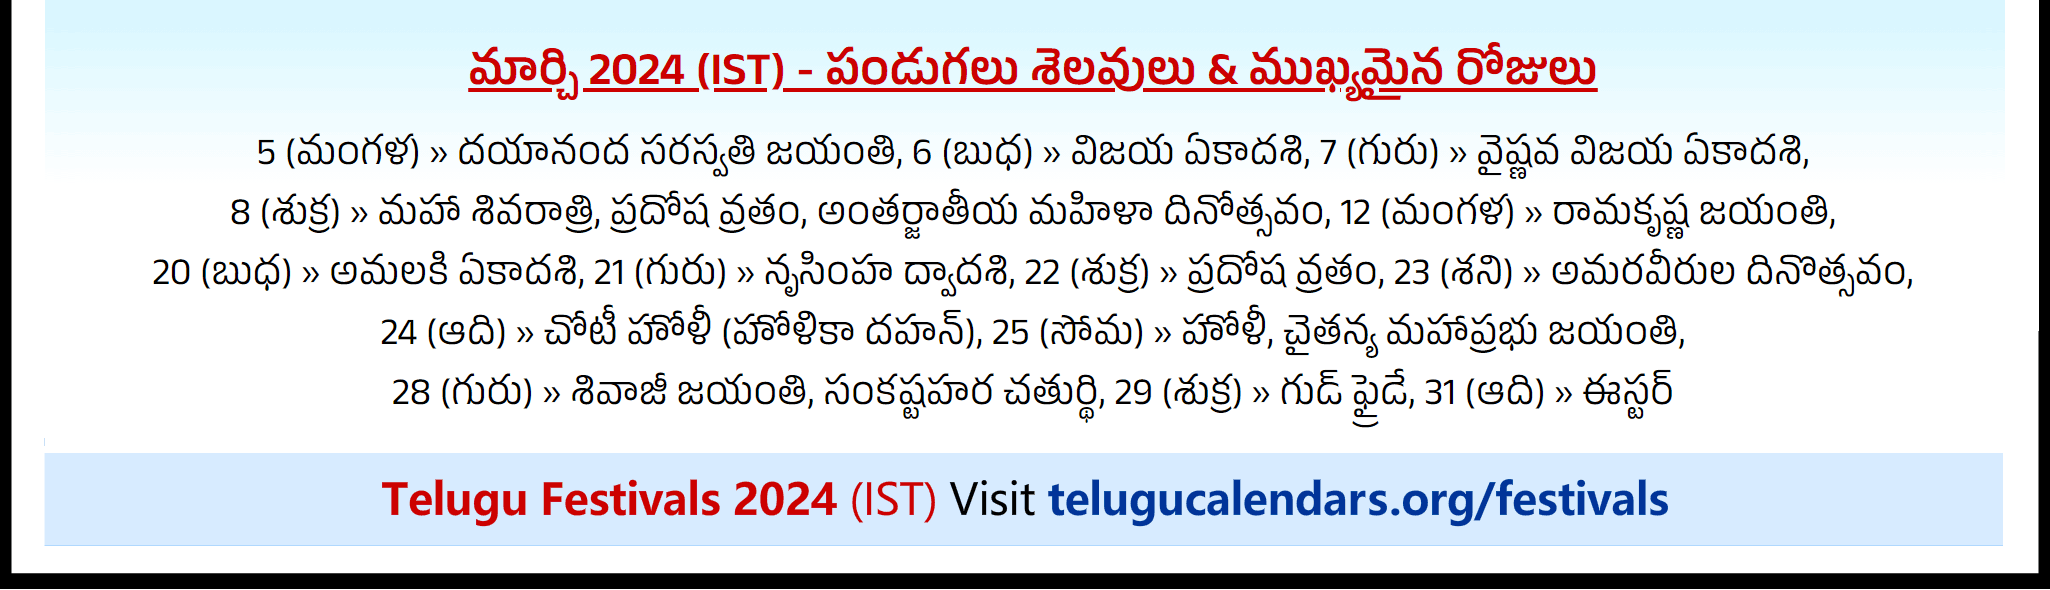 Telugu Festivals 2024 March Auckland